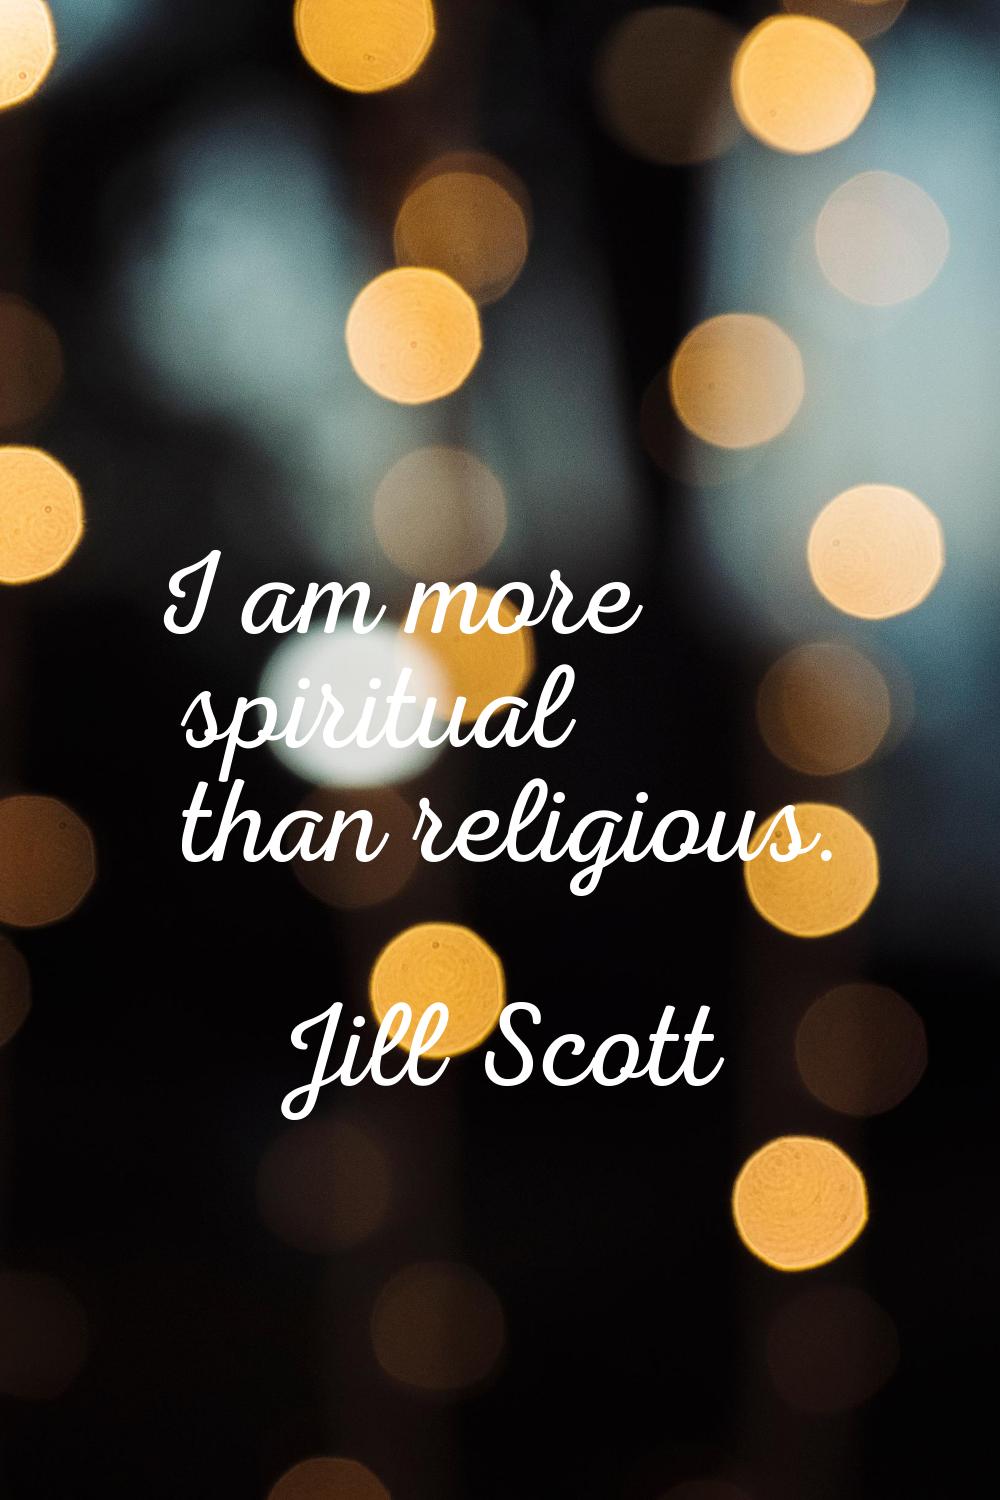 I am more spiritual than religious.